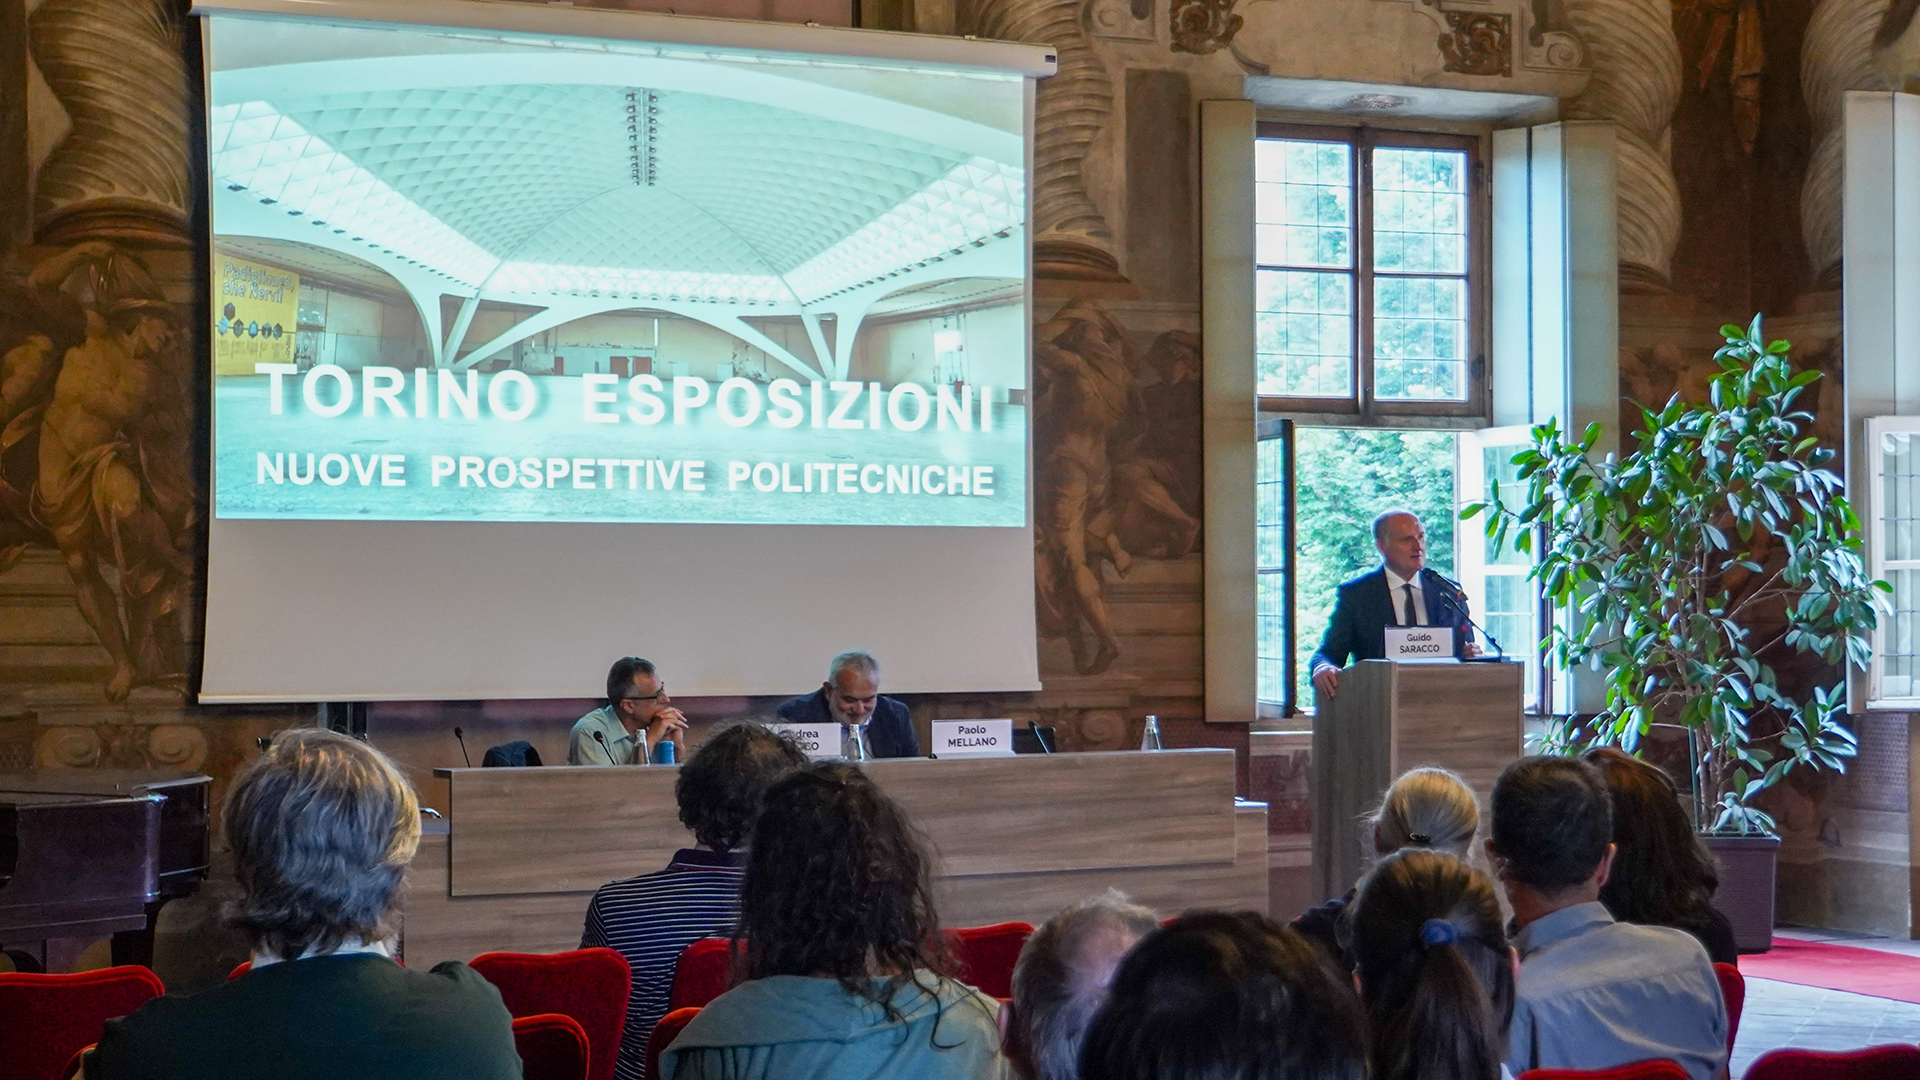 Foto dell'evento di presentazione dei progetti per Torino esposizioni